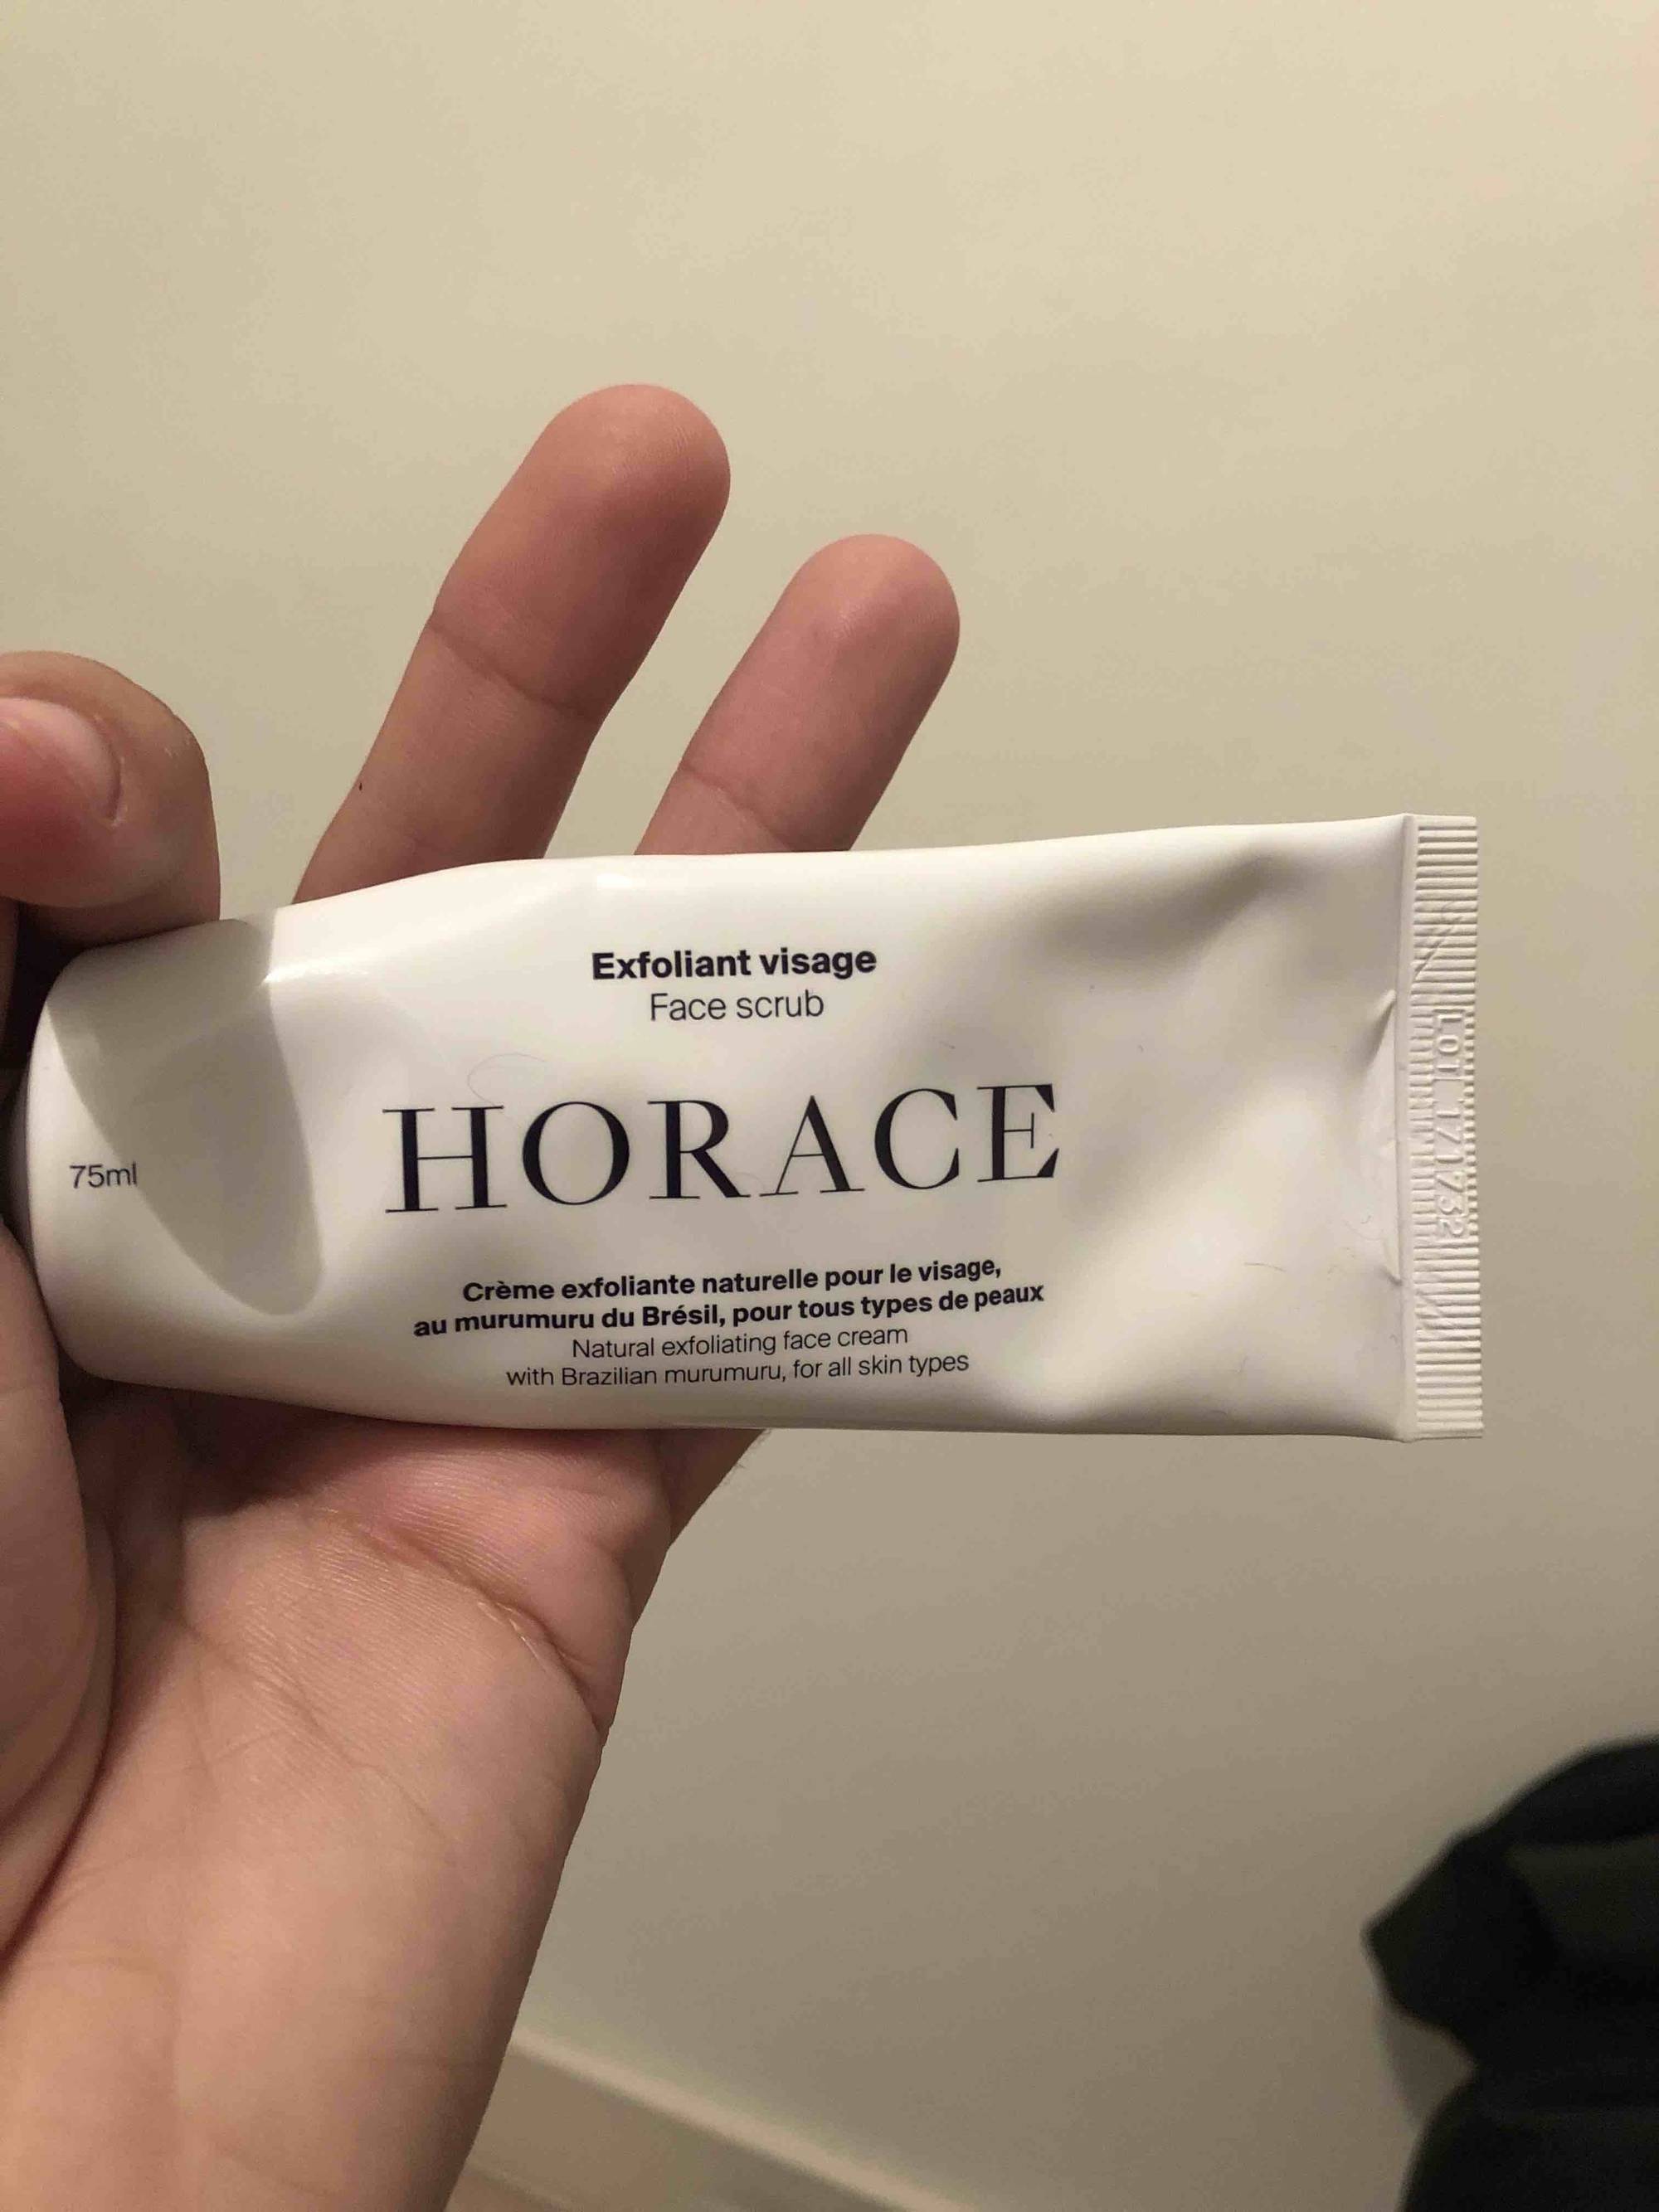 HORACE - Crème exfolianet naturelle pour le visage